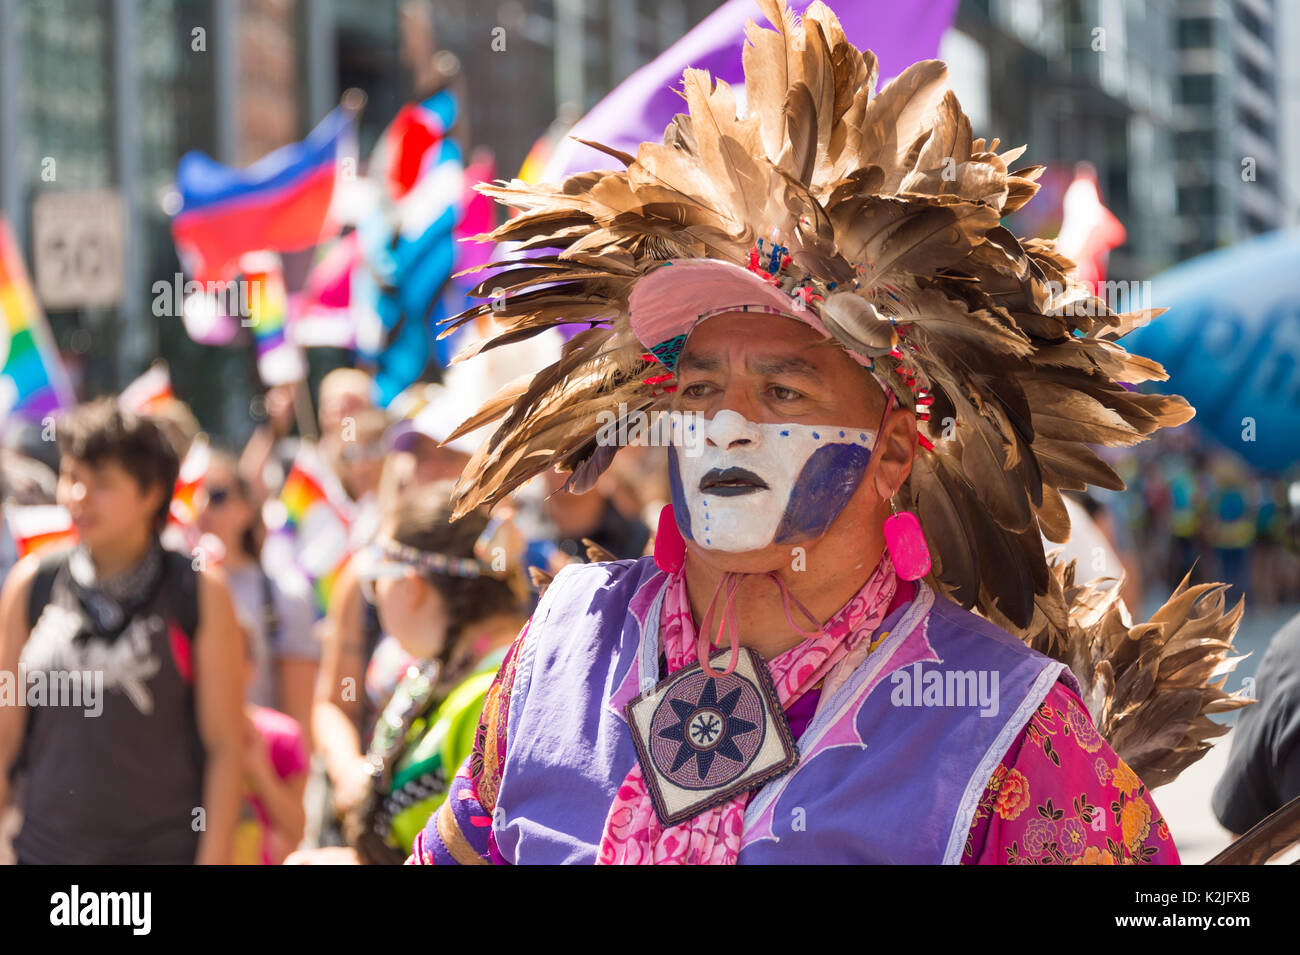 Montréal, Canada - 20 août 2017 : Premières Nations assister à la parade de la Fierté gaie de Montréal Banque D'Images